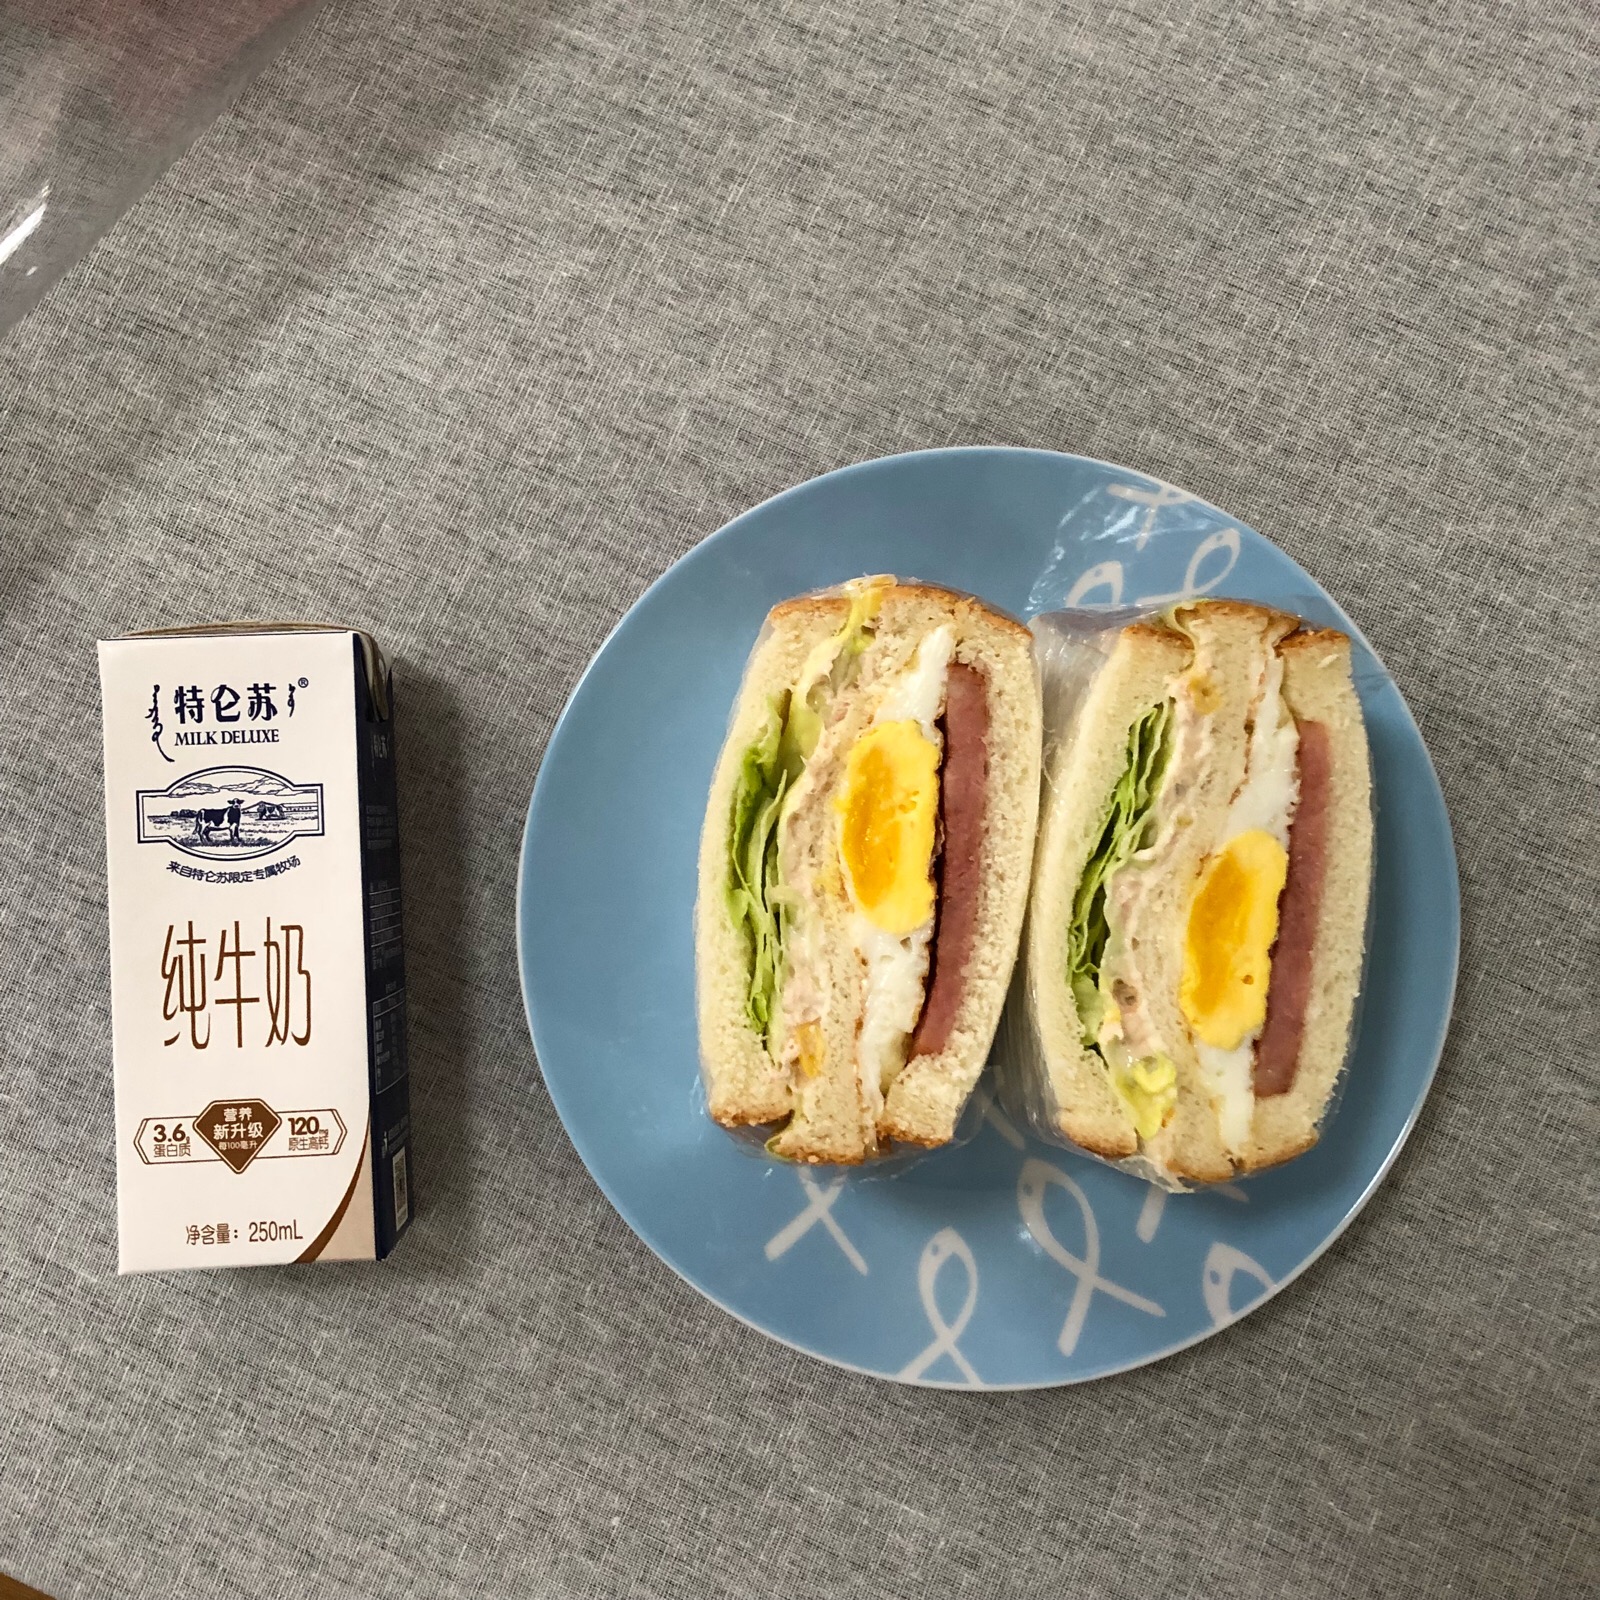 一个人的早餐,豪华金枪鱼三明治.